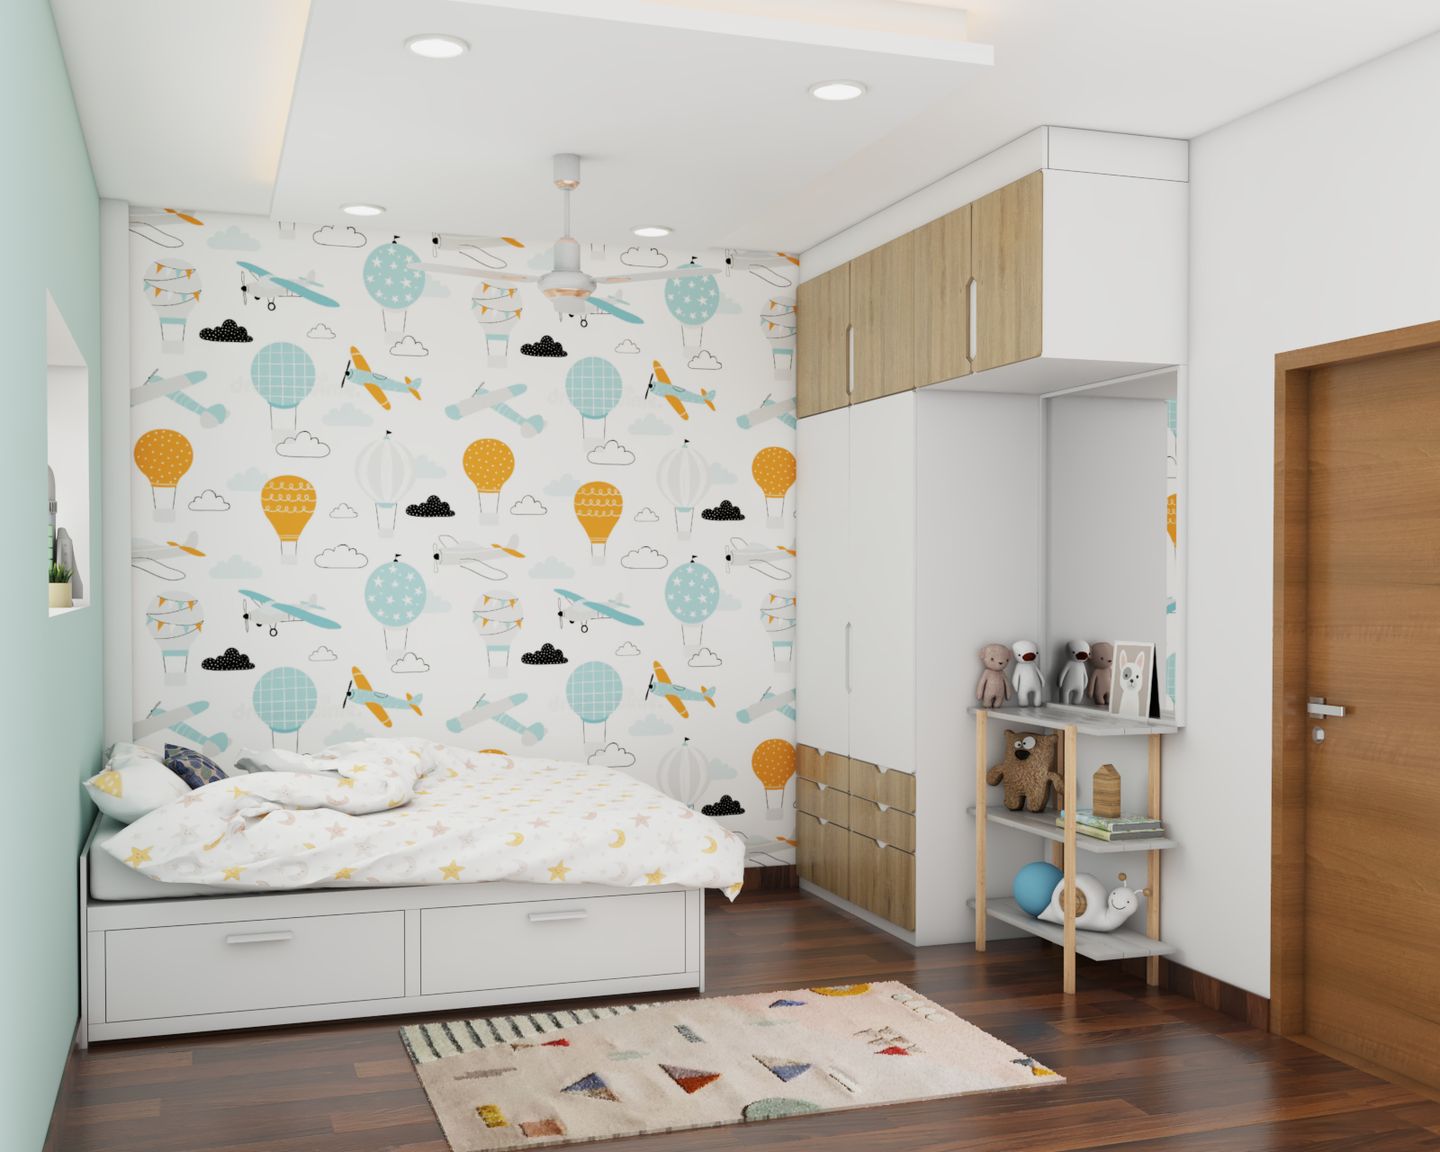 Kid's Bedroom Design With Wooden Flooring - Livspace